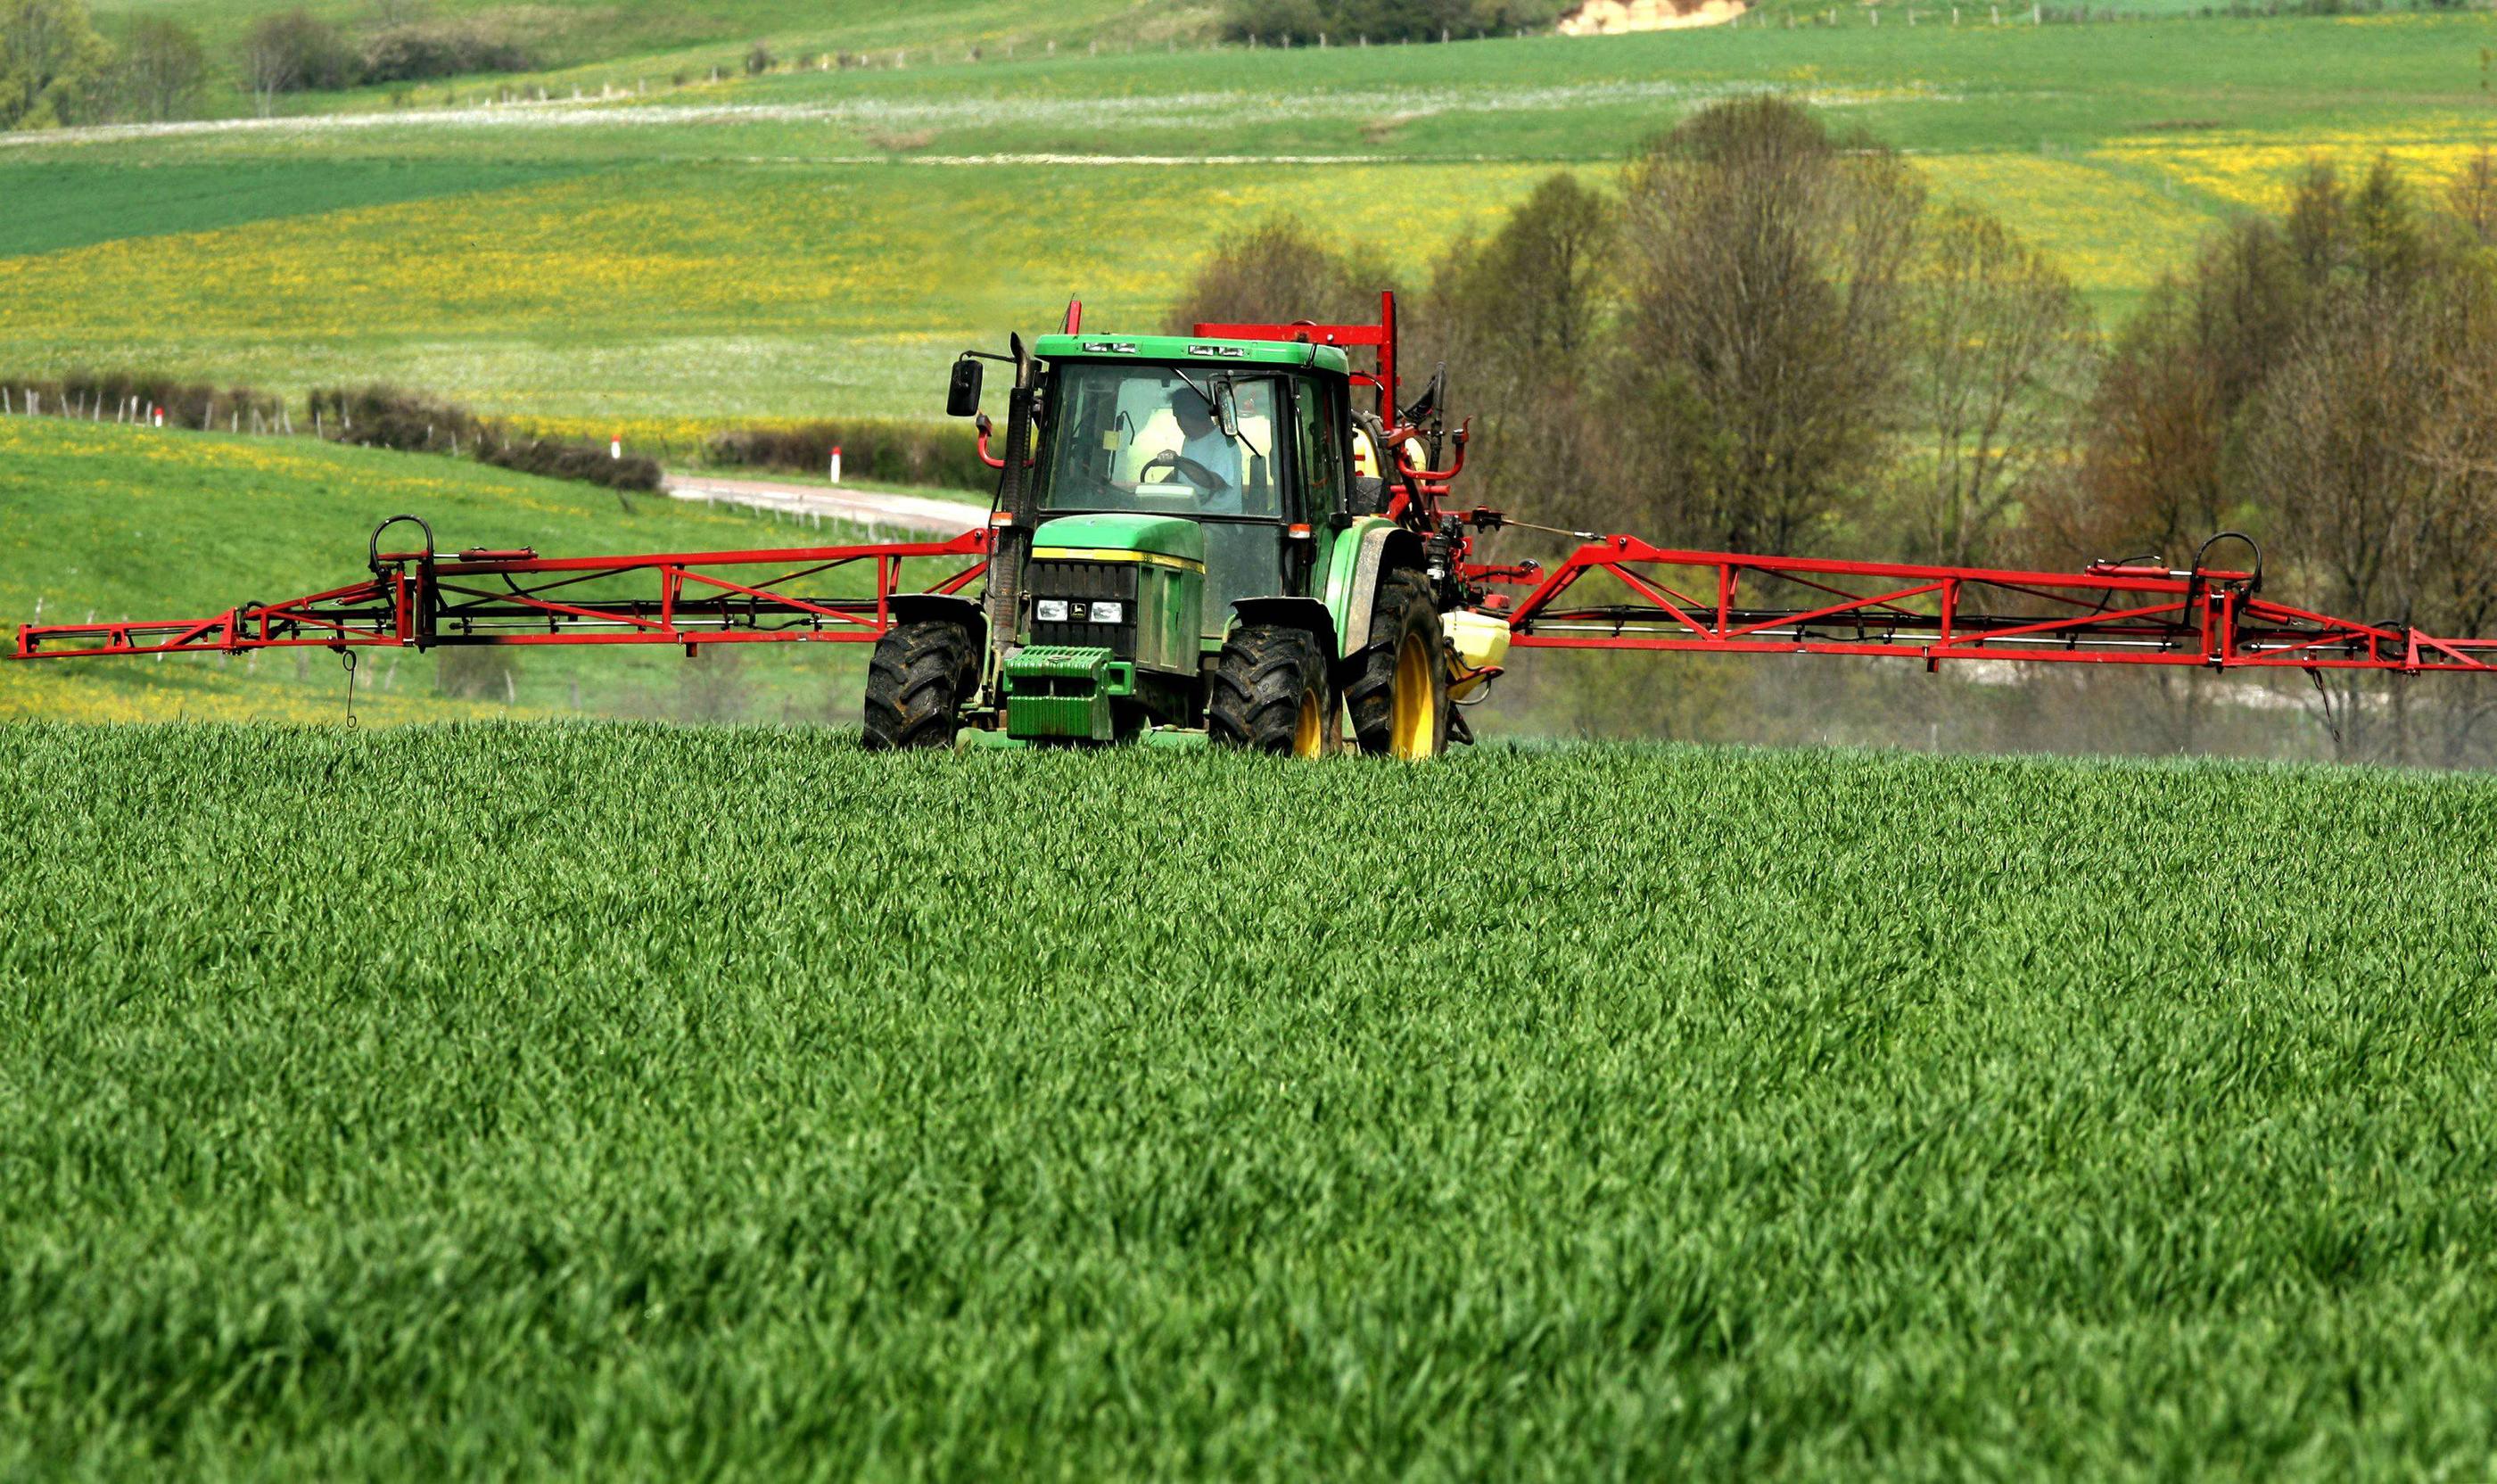 Malgré la mise en pause du plan, le gouvernement maintient l'objectif de réduction de 50 % de l'usage de pesticides d'ici 2030. (Illustration) PhotoPQR/Ouest France/Philippe Trias